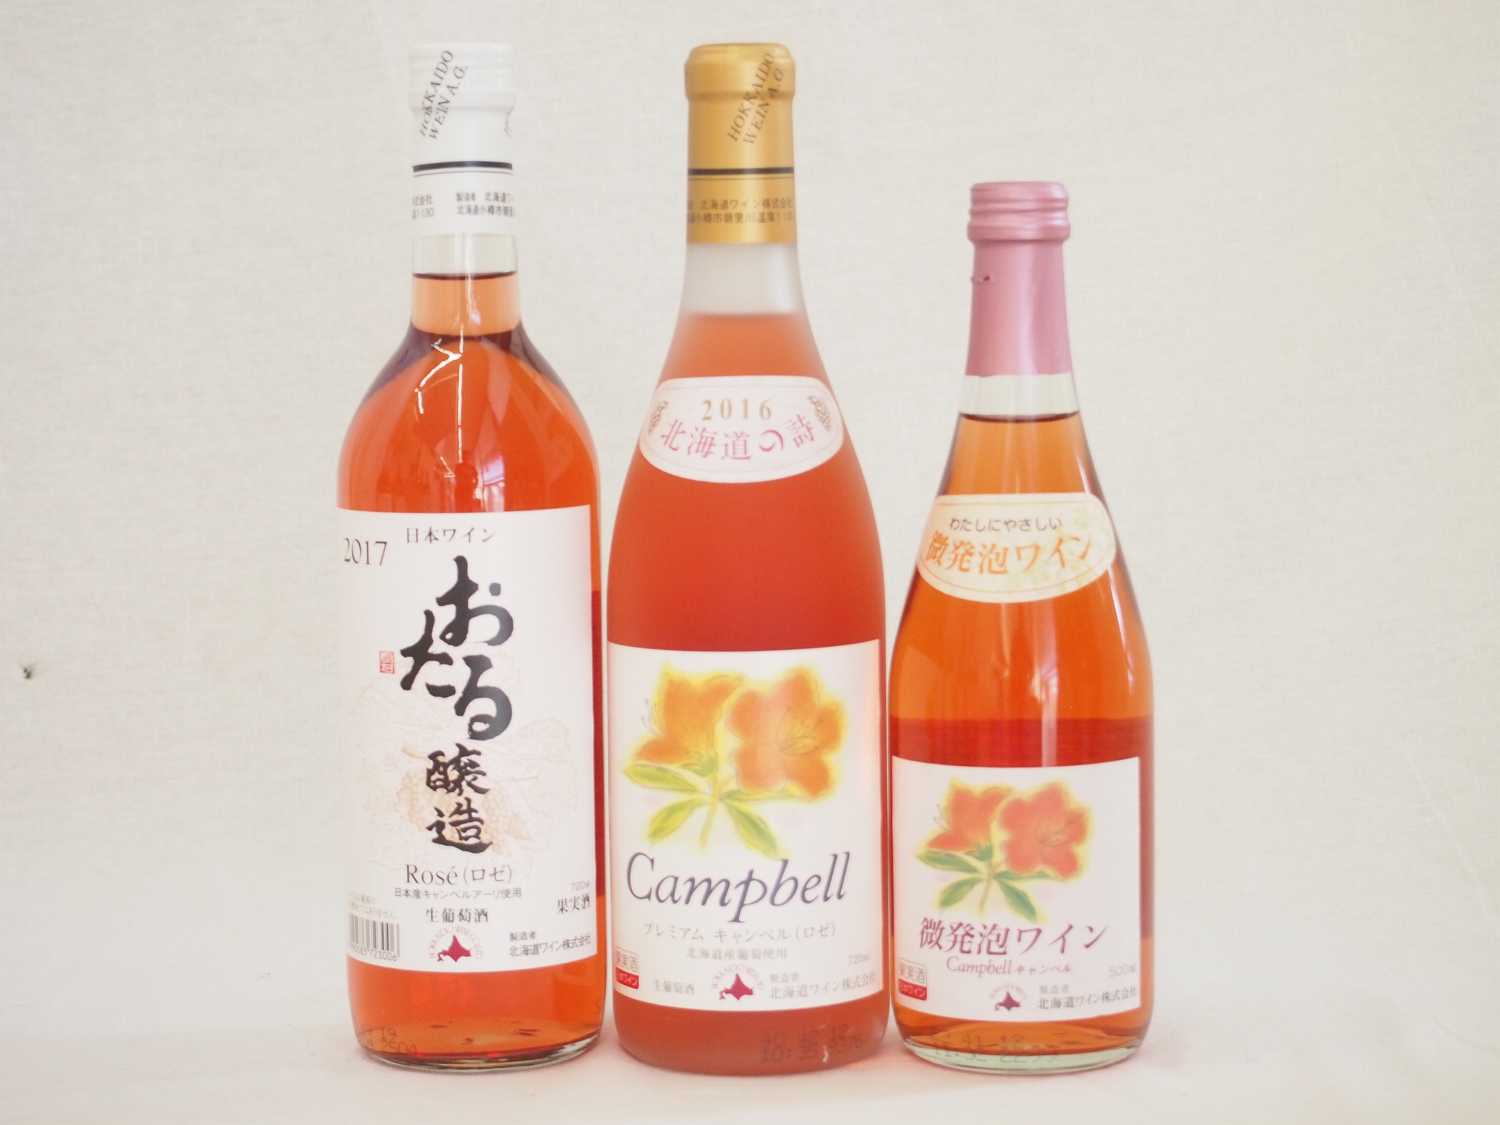 日本産葡萄100％おたるワイン3本セット プレミアムキャンベルロゼ720ml×1本 微炭酸ロゼ500ml×1本 ロゼ720ml×1本 (北海道)